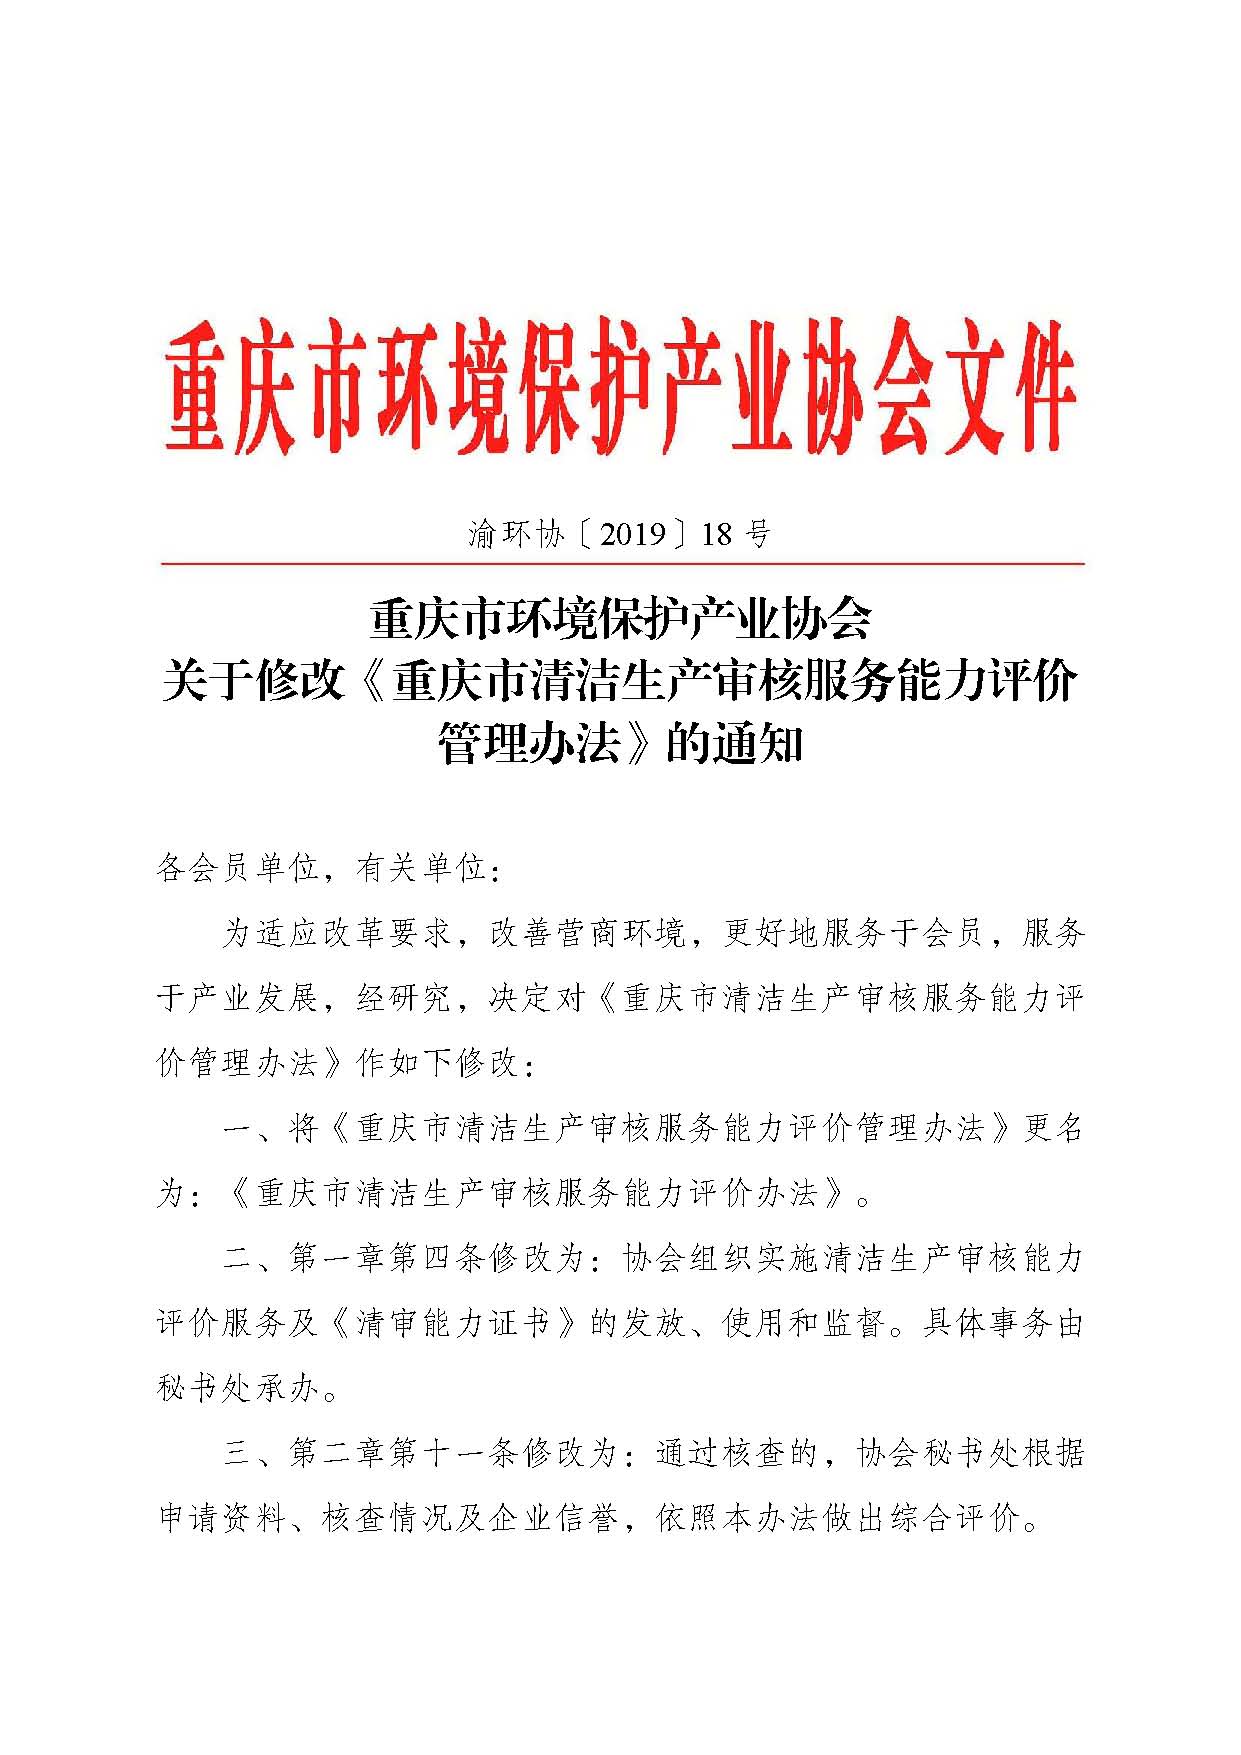 重庆市环境保护产业协会关于修改《重庆市清洁生产审核服务能力评价管理办法》的通知-副本_页面_1